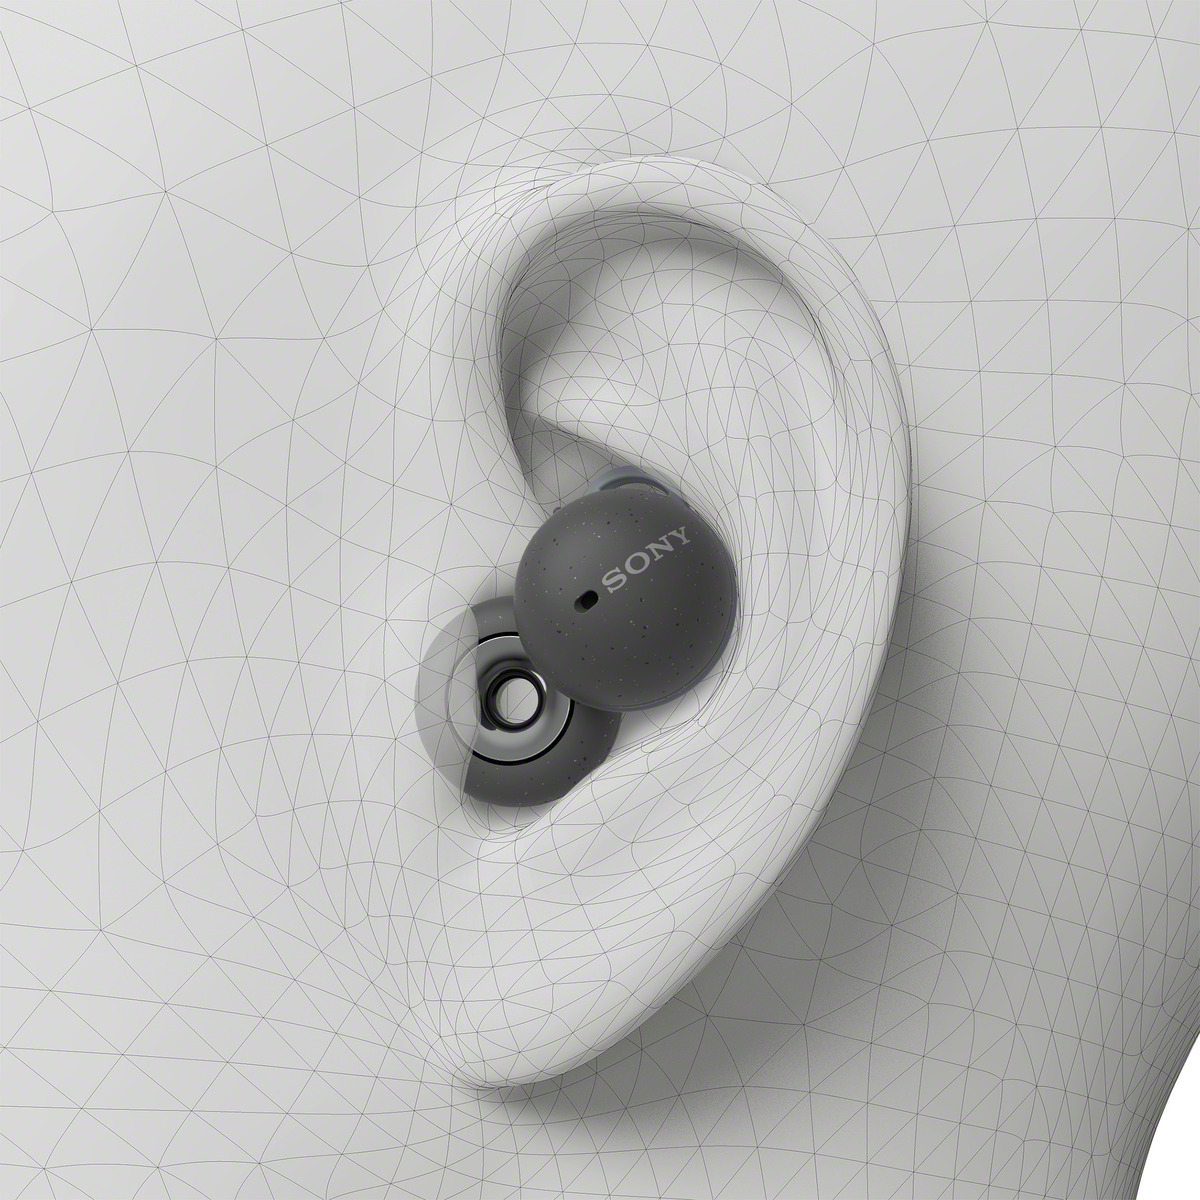 ソニー 耳を塞がないイヤホンlinkbuds 発表 歴代最小 最軽量の完全ワイヤレス Engadget 日本版